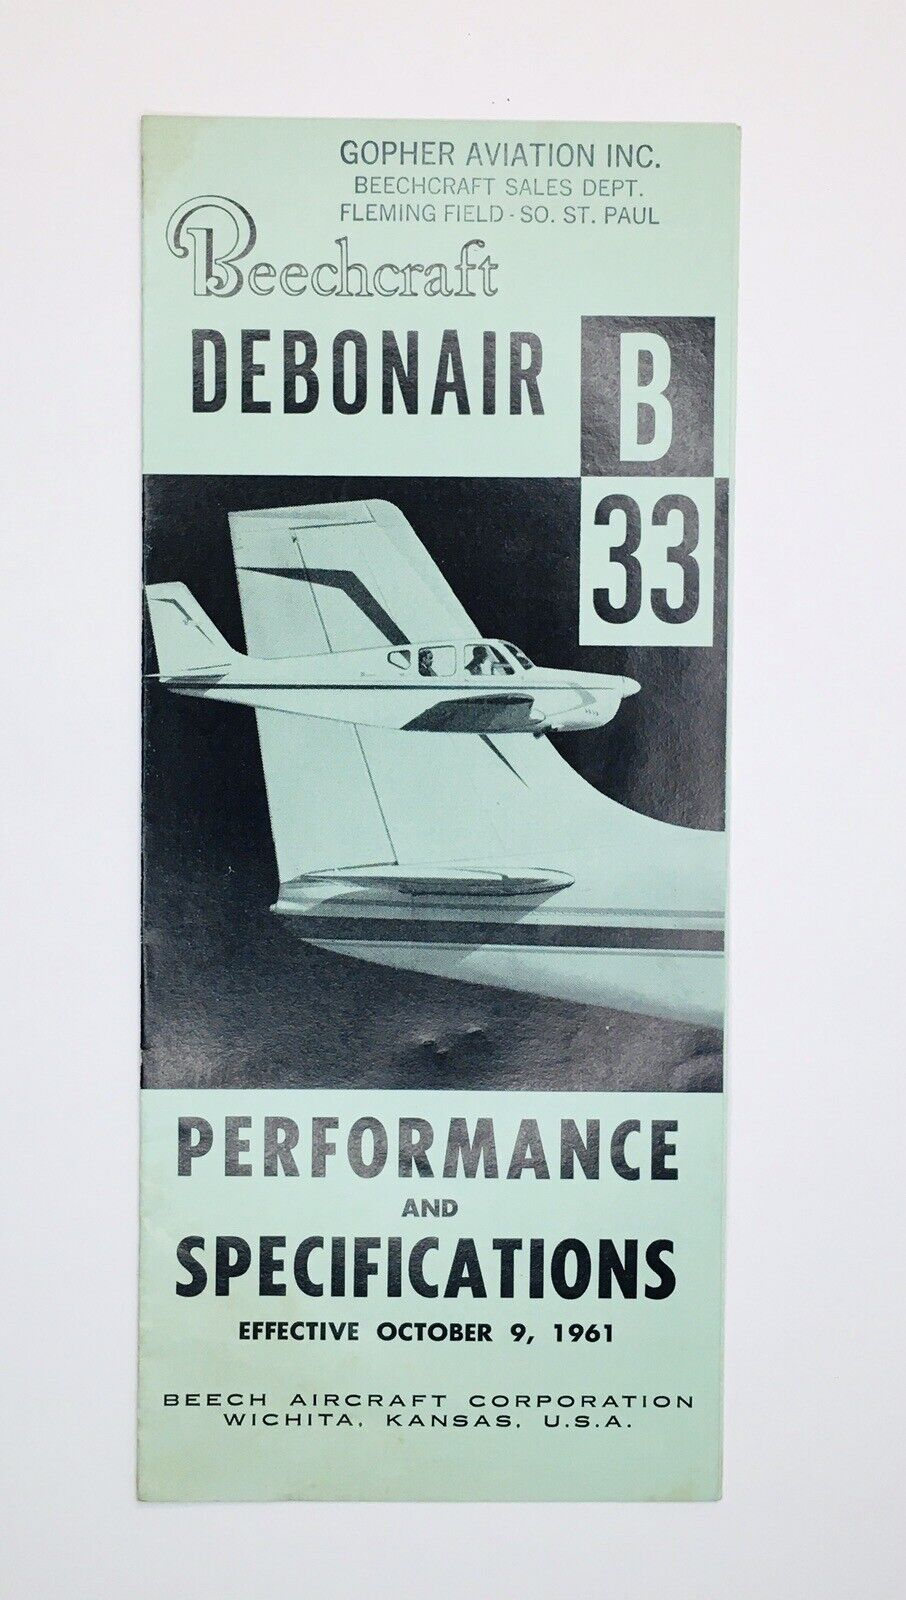 Beechcraft Debonair B33 Performance and Specifications Brochure 1961 Beech